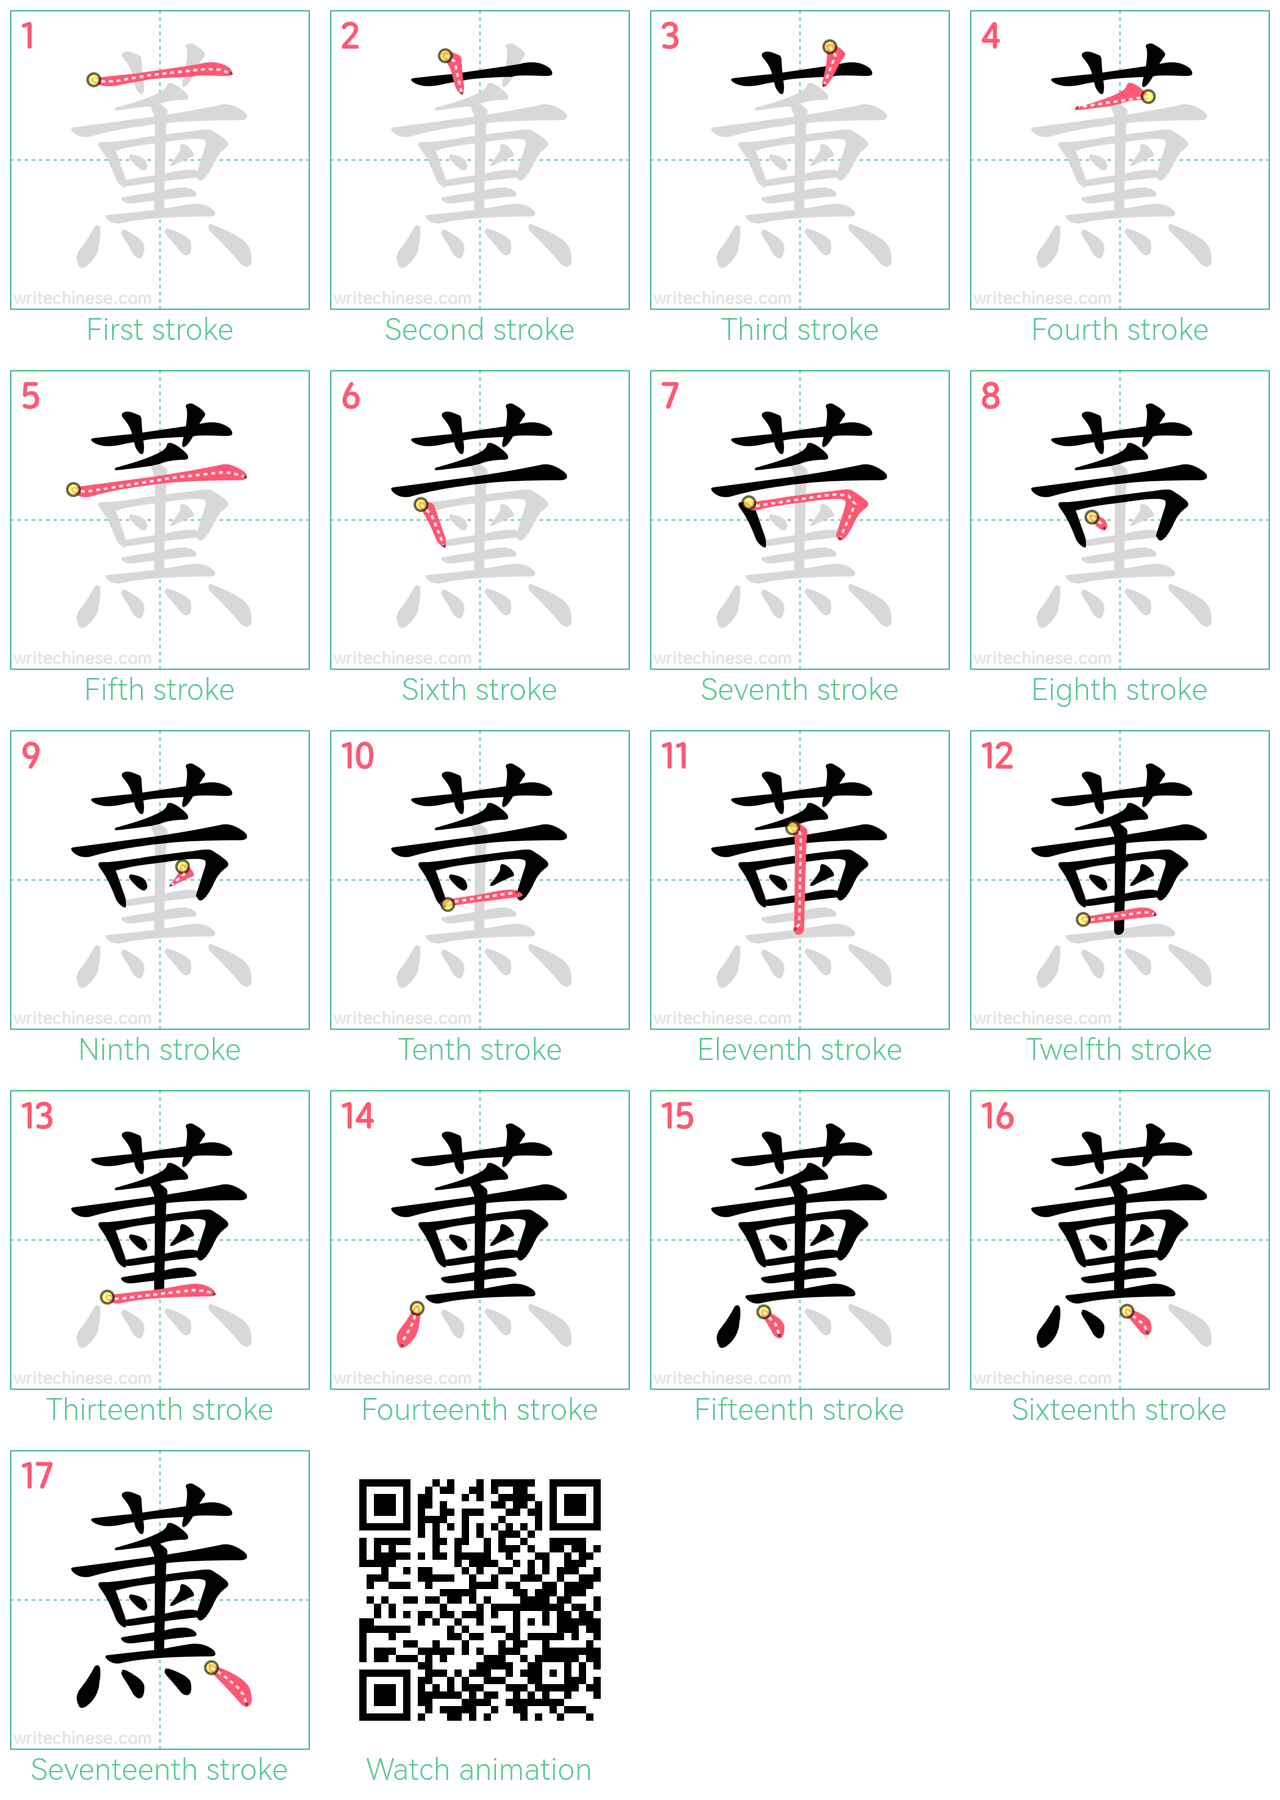 薰 step-by-step stroke order diagrams